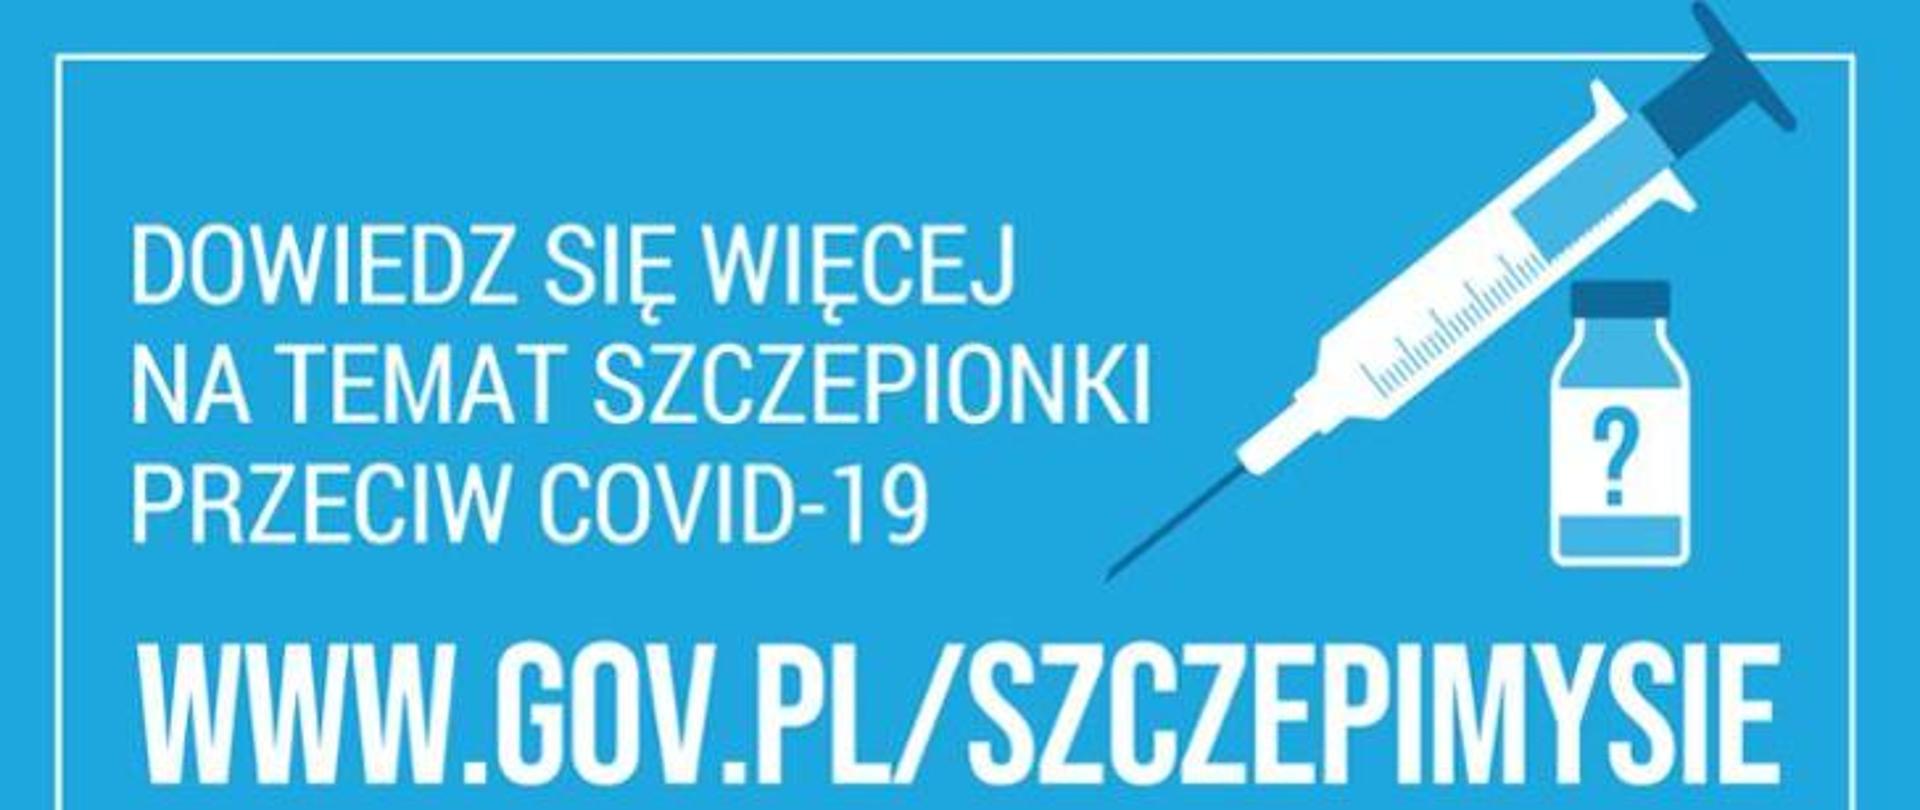 Biały napis na niebieskim tle "Dowiedz się więcej na temat szczepionki przeciw COVID-19
www.gov.pl/szczepimysie" obok. narysowana strzykawka i fiolka ze znakiem zapytania.